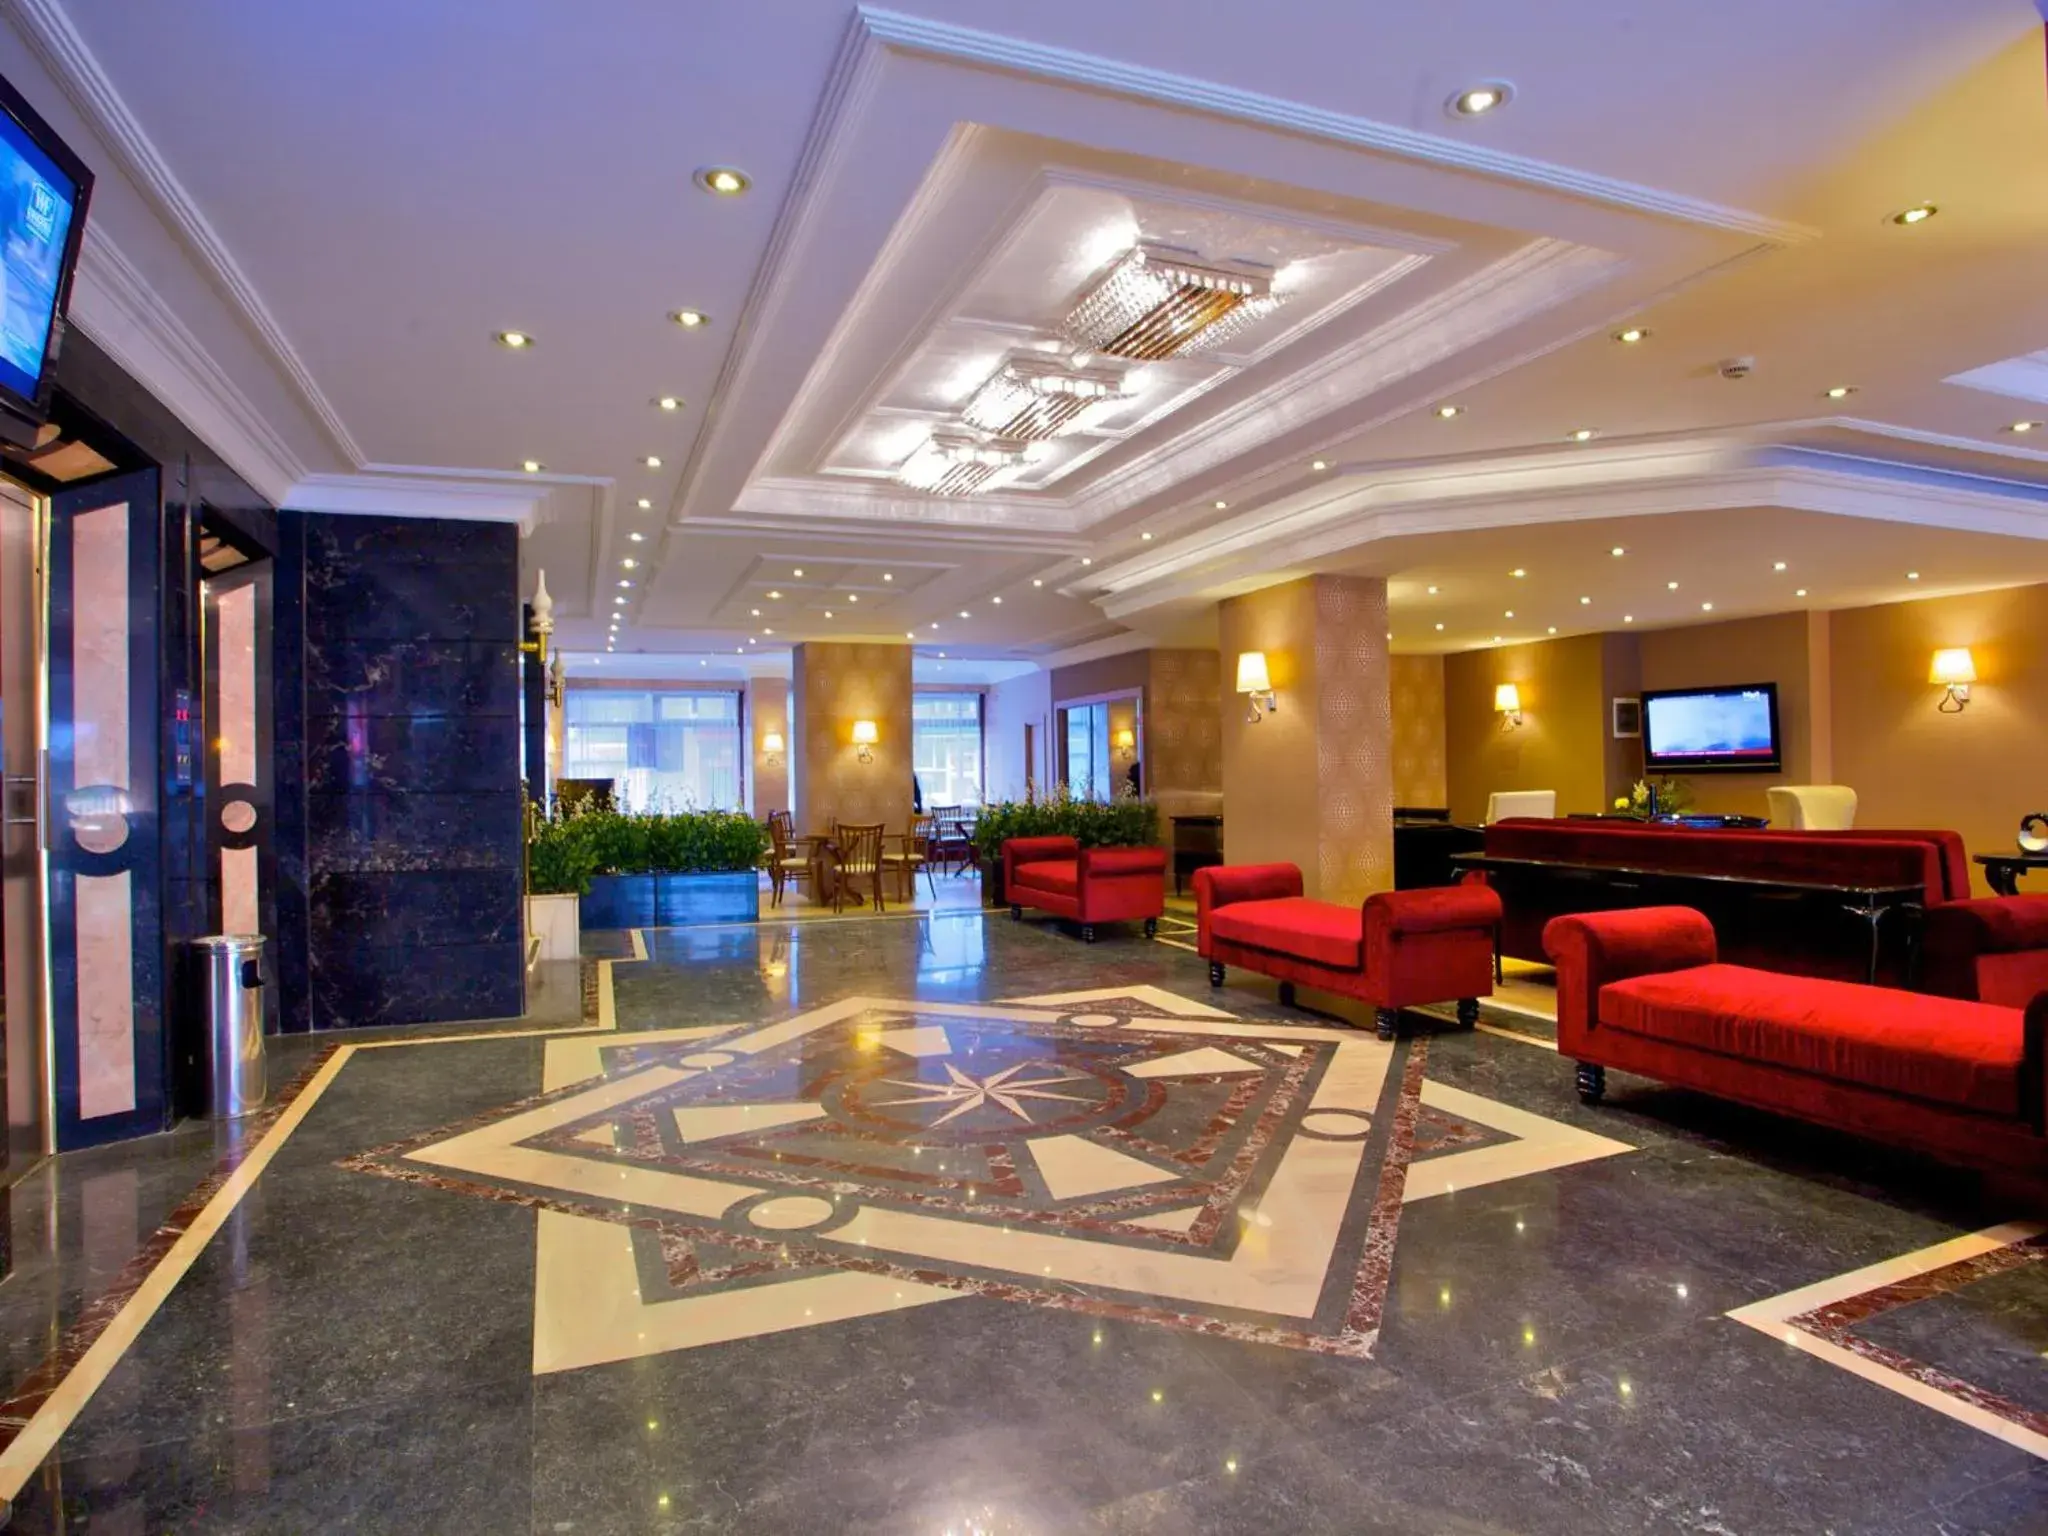 Lobby or reception, Lobby/Reception in Grand Emin Hotel